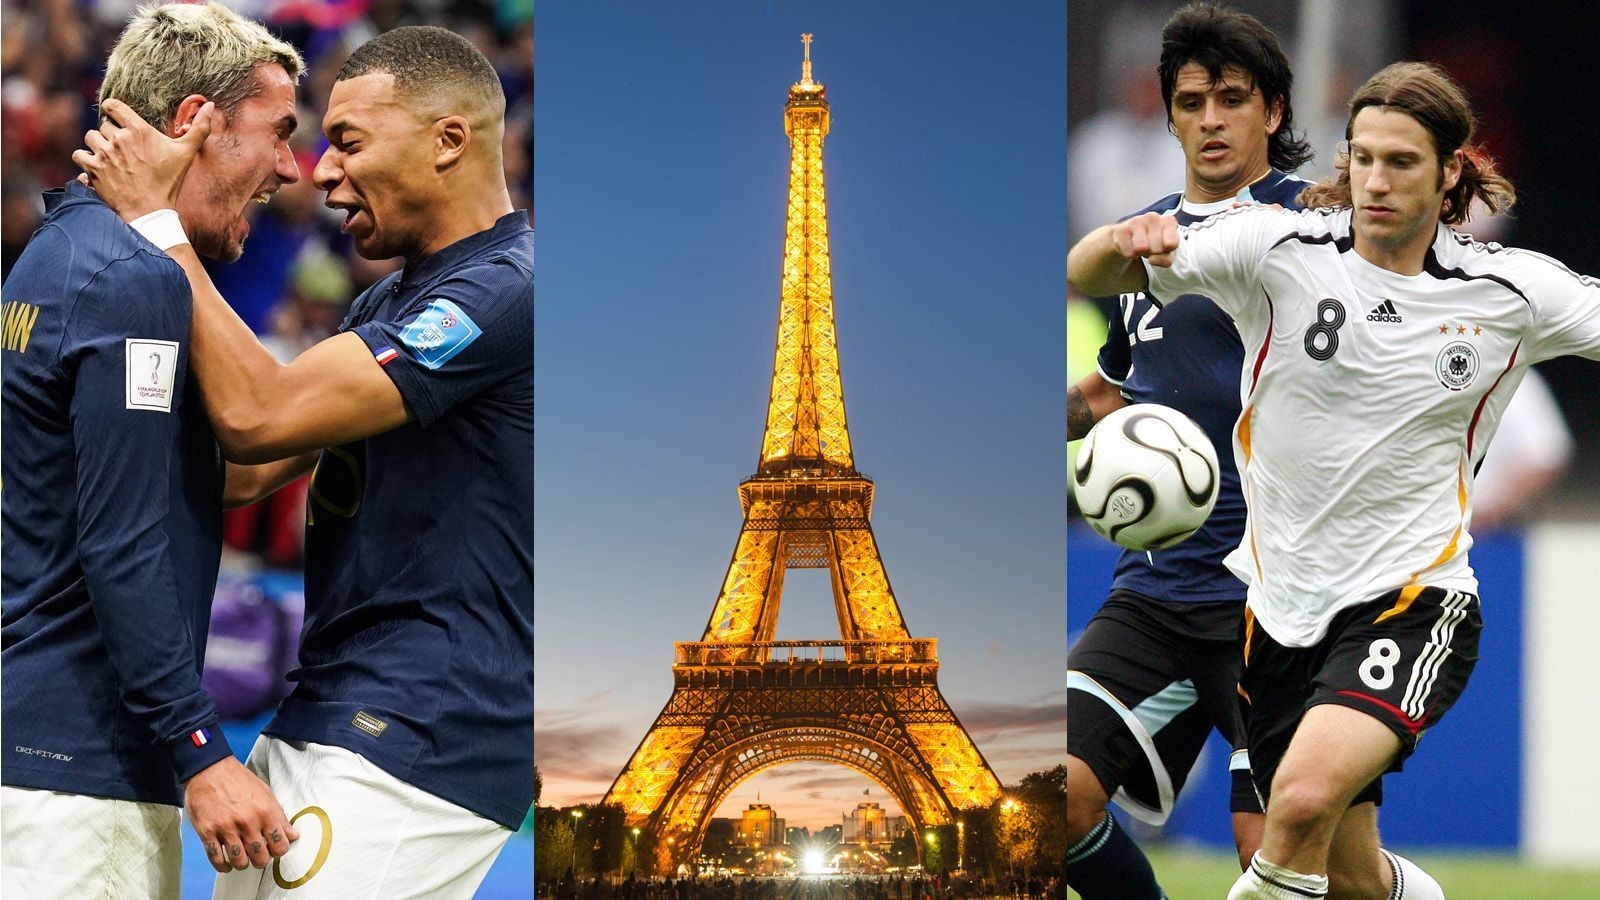 
                <strong>Sieben Gründe, um im WM-Finale für Frankreich zu sein</strong><br>
                Deutschland in der Vorrunde gescheitert, für wen ist man dann am Sonntag (16:00 Uhr im Liveticker) beim WM-Finale? Wir liefern sieben gute Gründe, um Frankreich die Daumen zu drücken. Allez les Bleus!
              